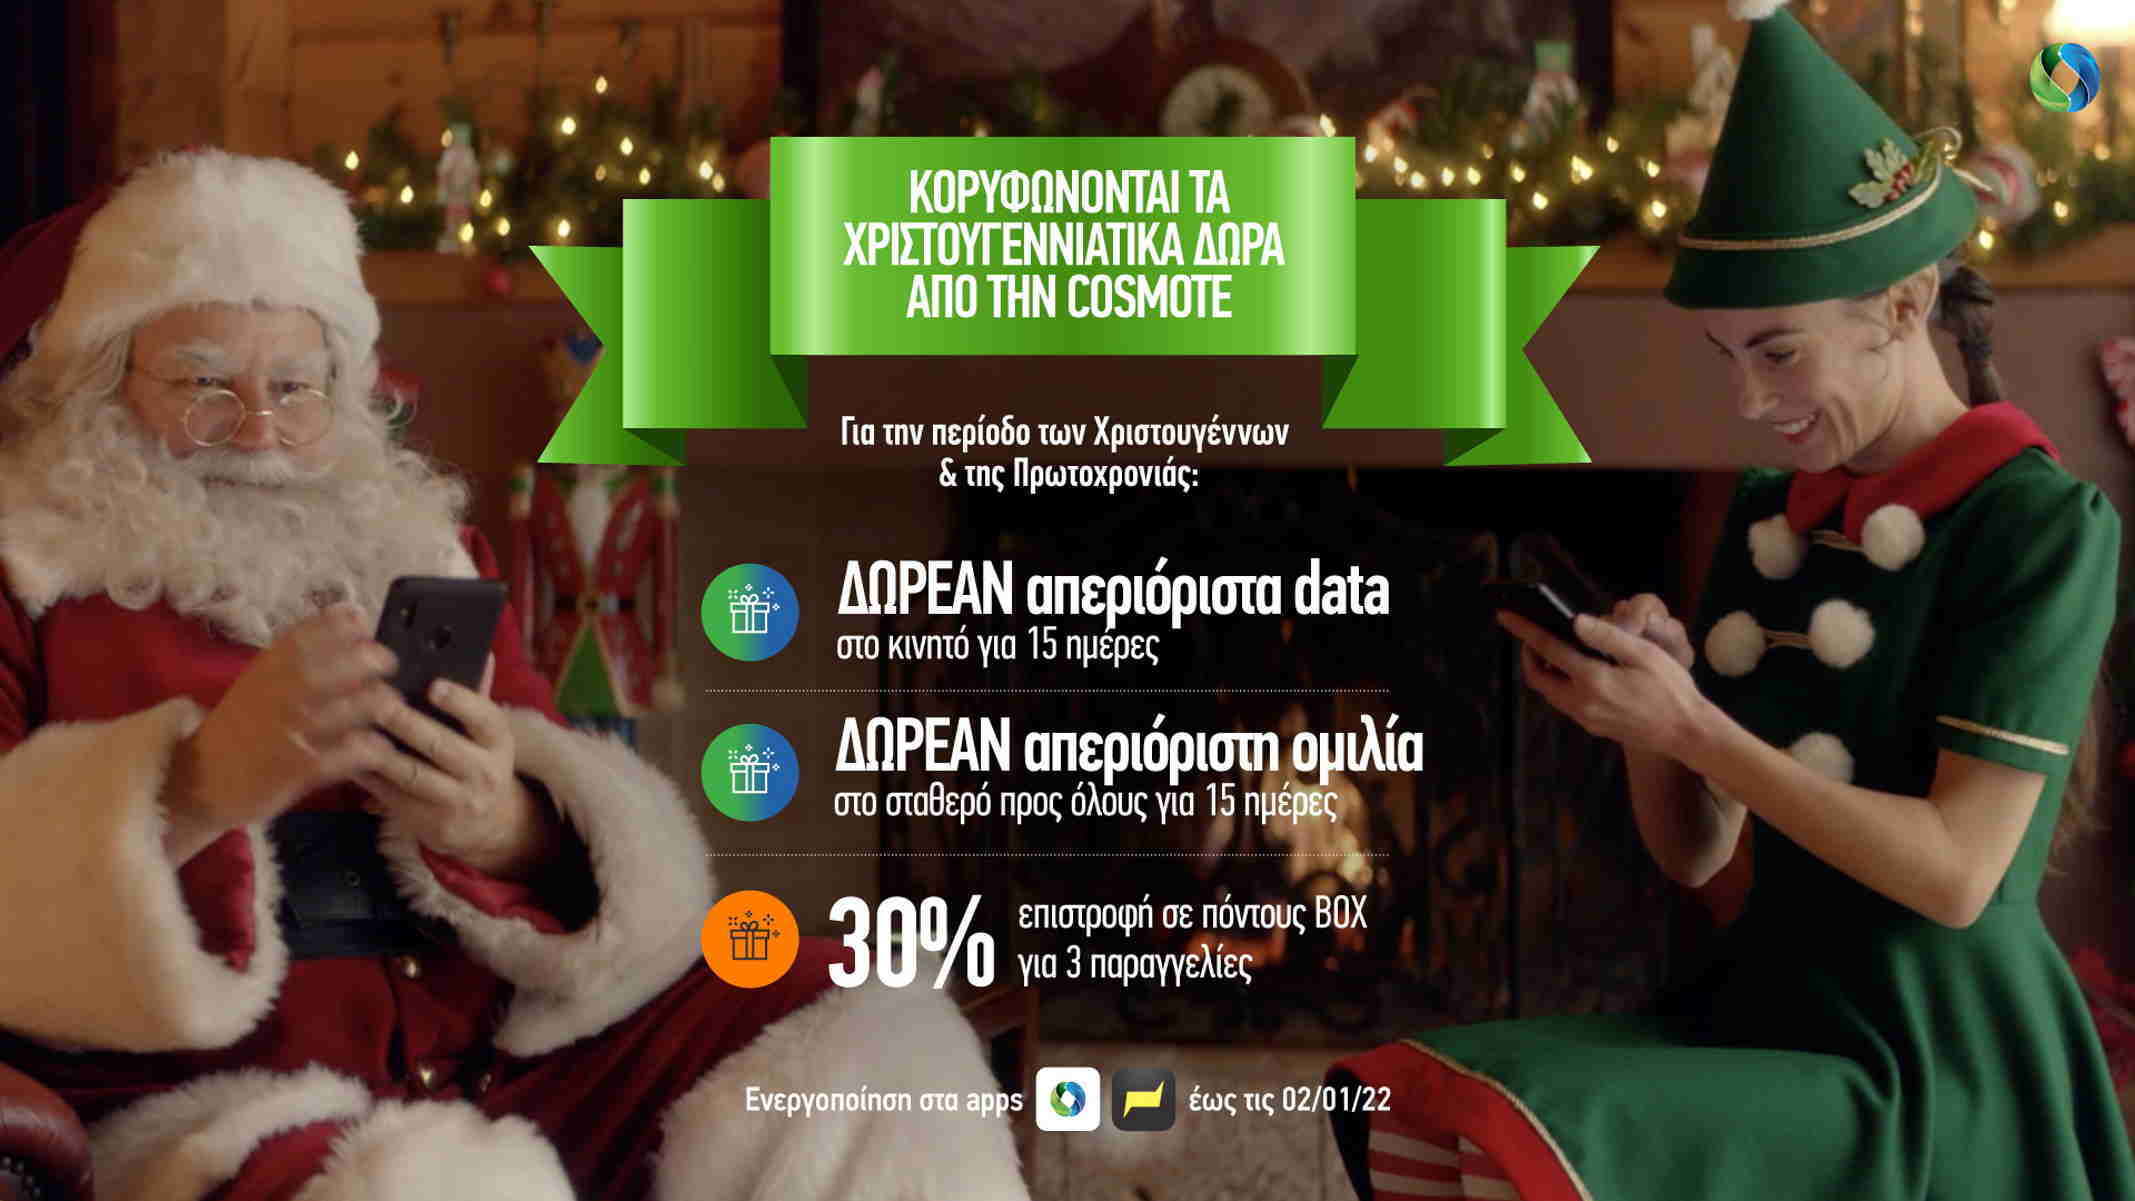 Cosmote: Απεριόριστα data στο κινητό και απεριόριστη ομιλία στο σταθερό δωρεάν για 15 ημέρες την χριστουγεννιάτικη περίοδο - Newsit